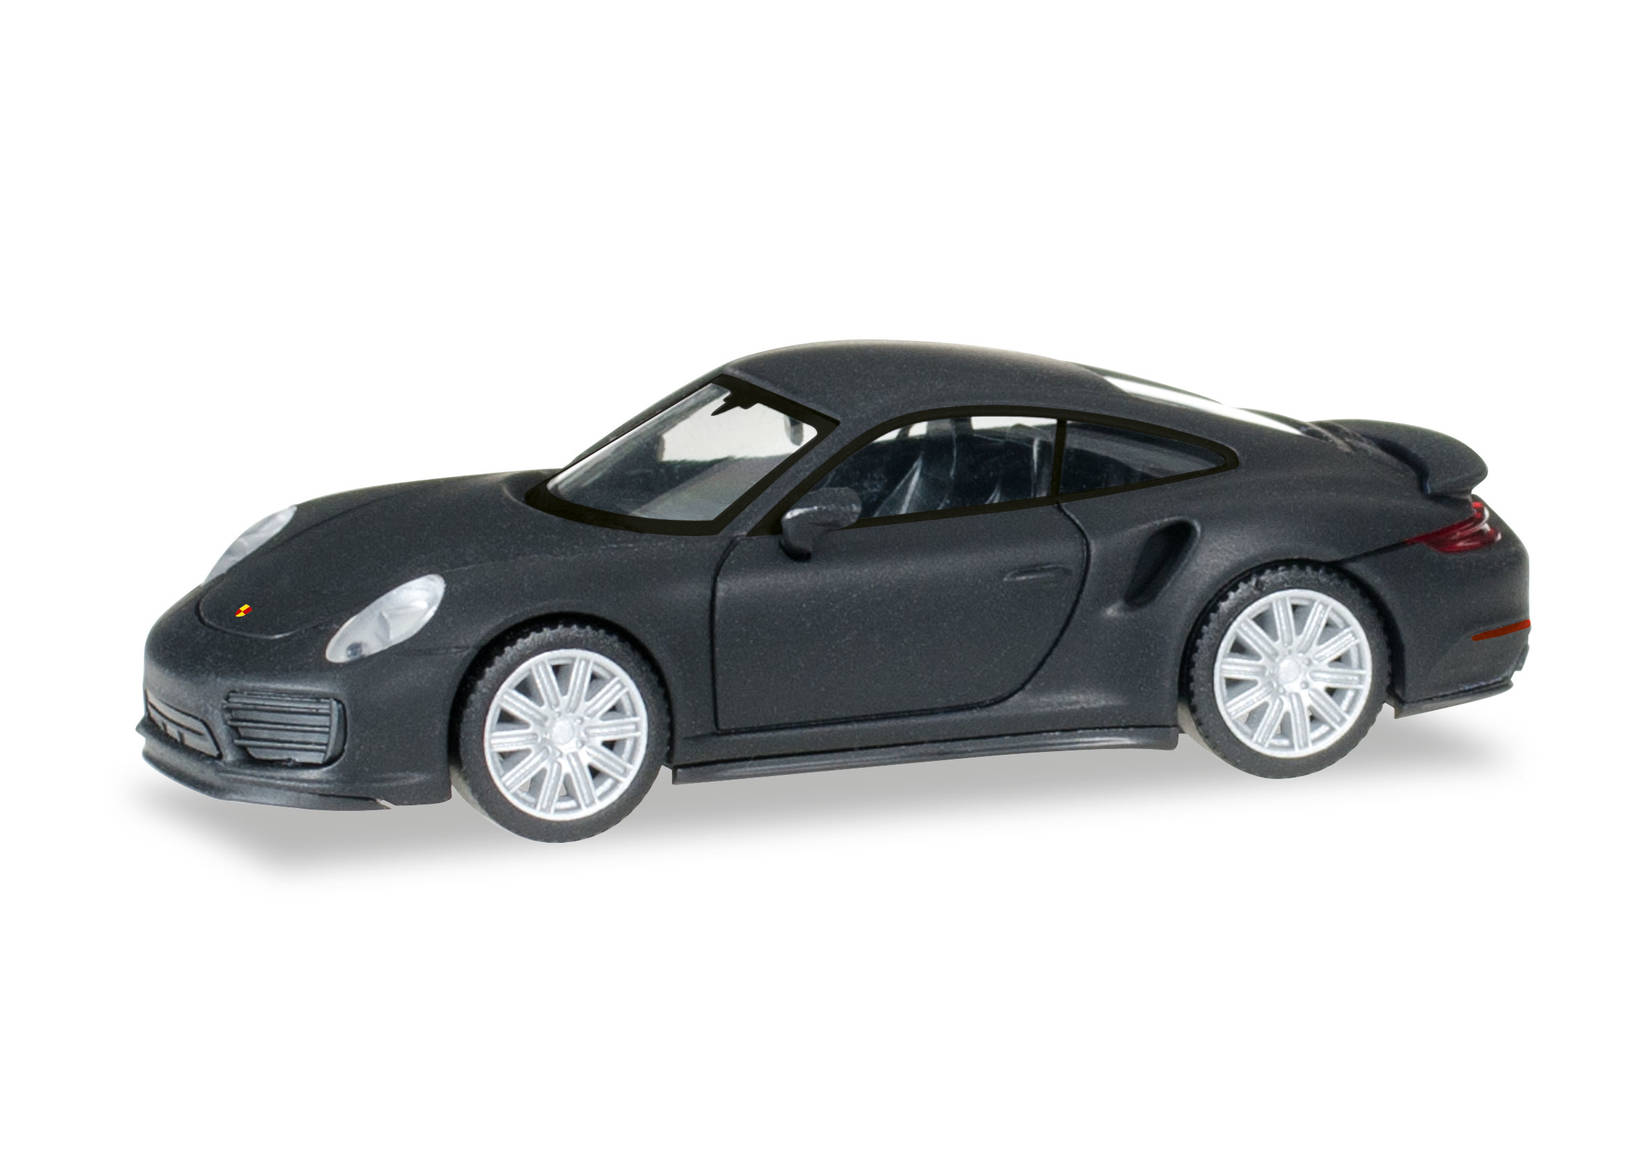 Porsche 911 Turbo, matt black with chromed rims